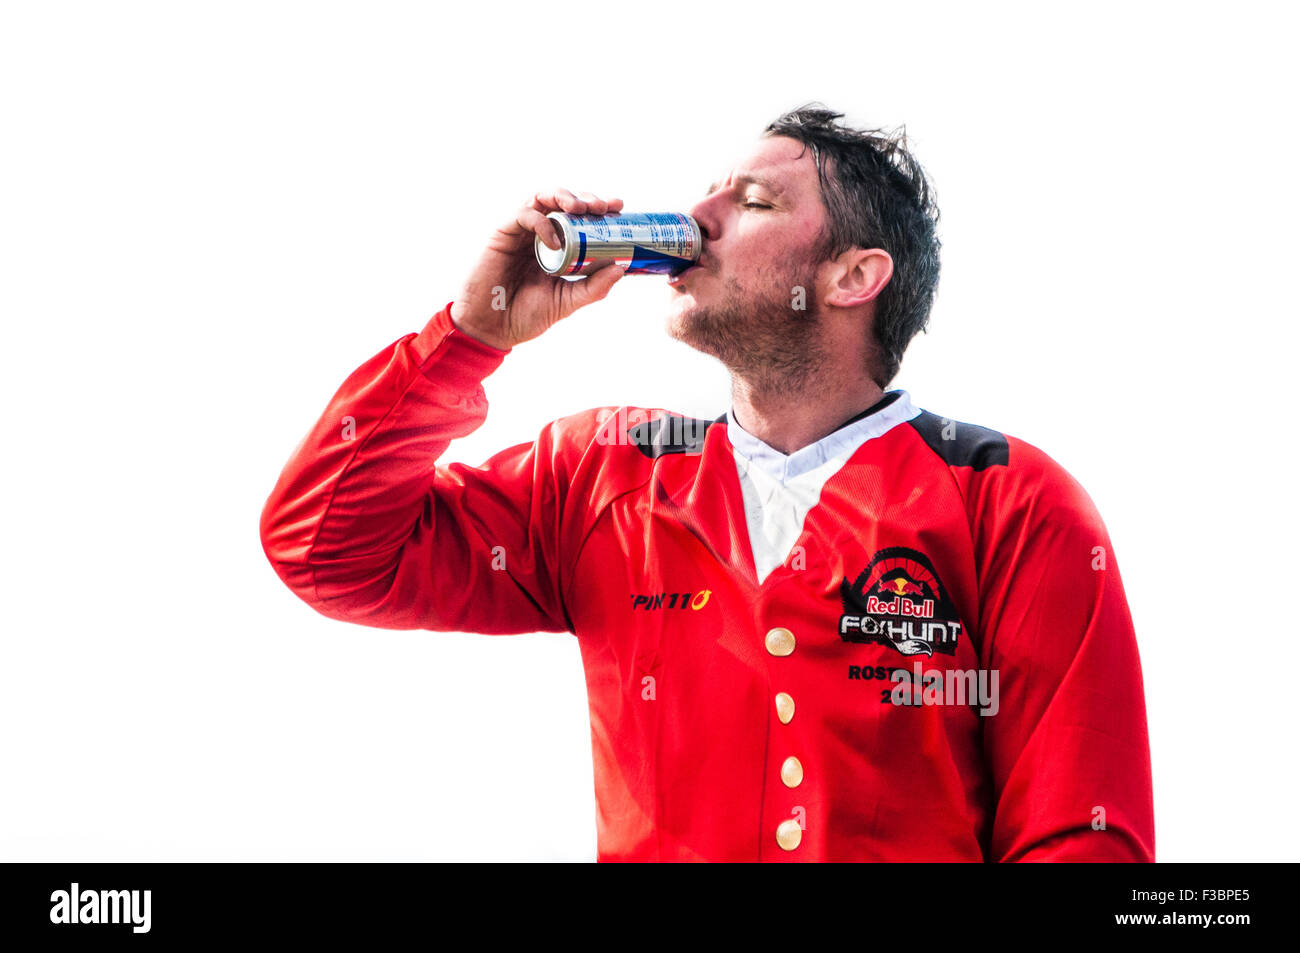 Rostrevor, Nordirland. 4. Oktober 2015 - Getränke ein Konkurrent eine Dose Red Bull bei der Red Bull Foxhunt Mountainbike downhill Challenge. Bildnachweis: Stephen Barnes/Alamy Live-Nachrichten Stockfoto